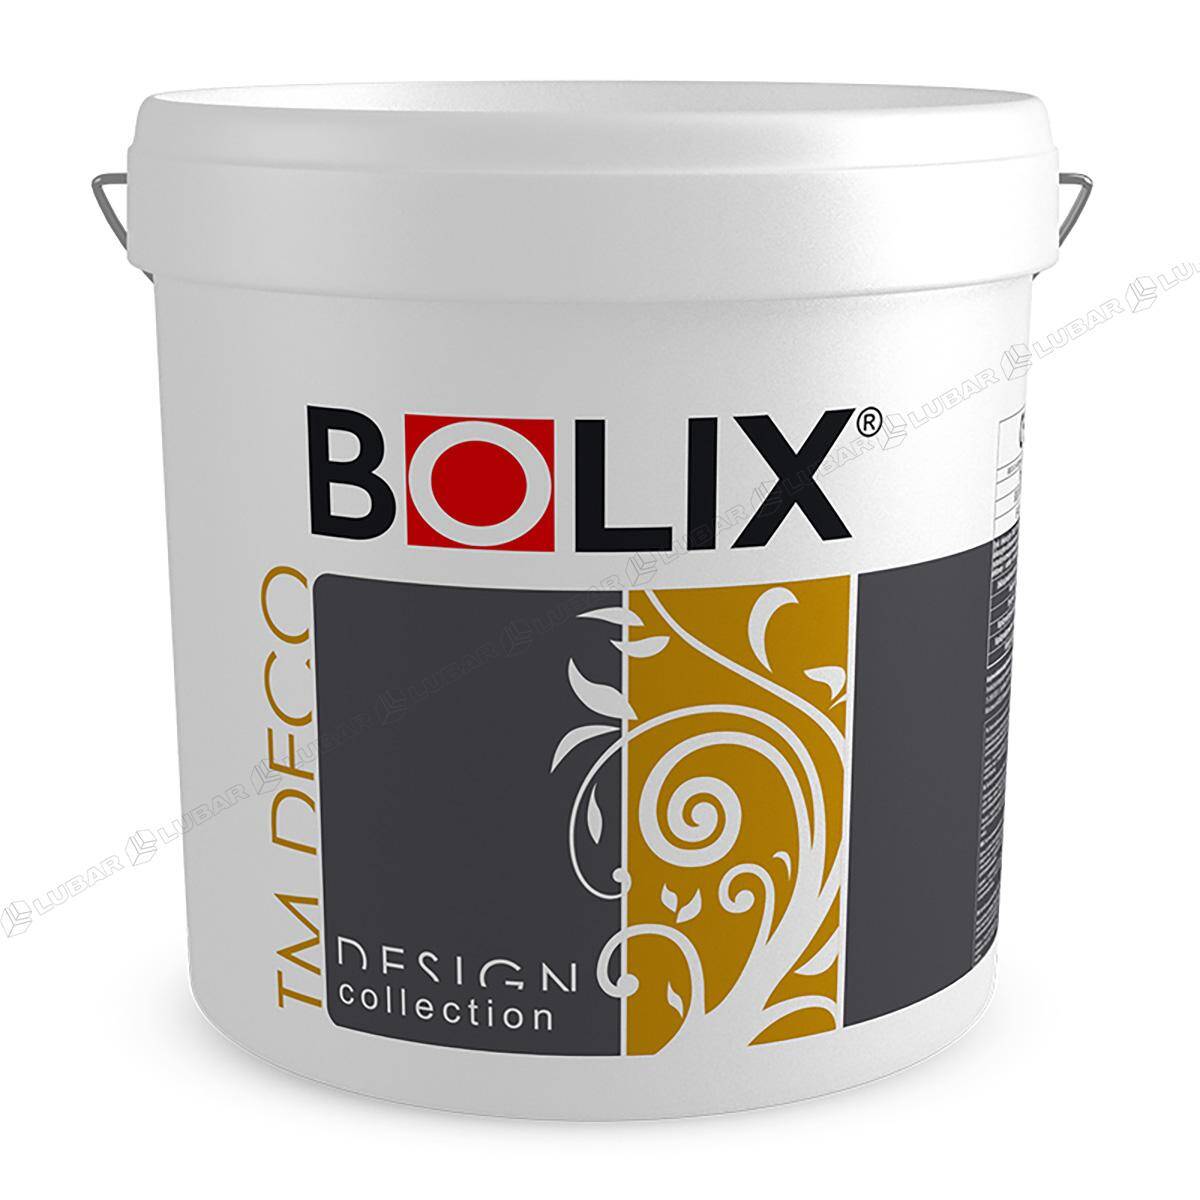 BOLIX TM DECO Tynk dekoracyjny z miką 25 kg  MILK LAKE TMD10